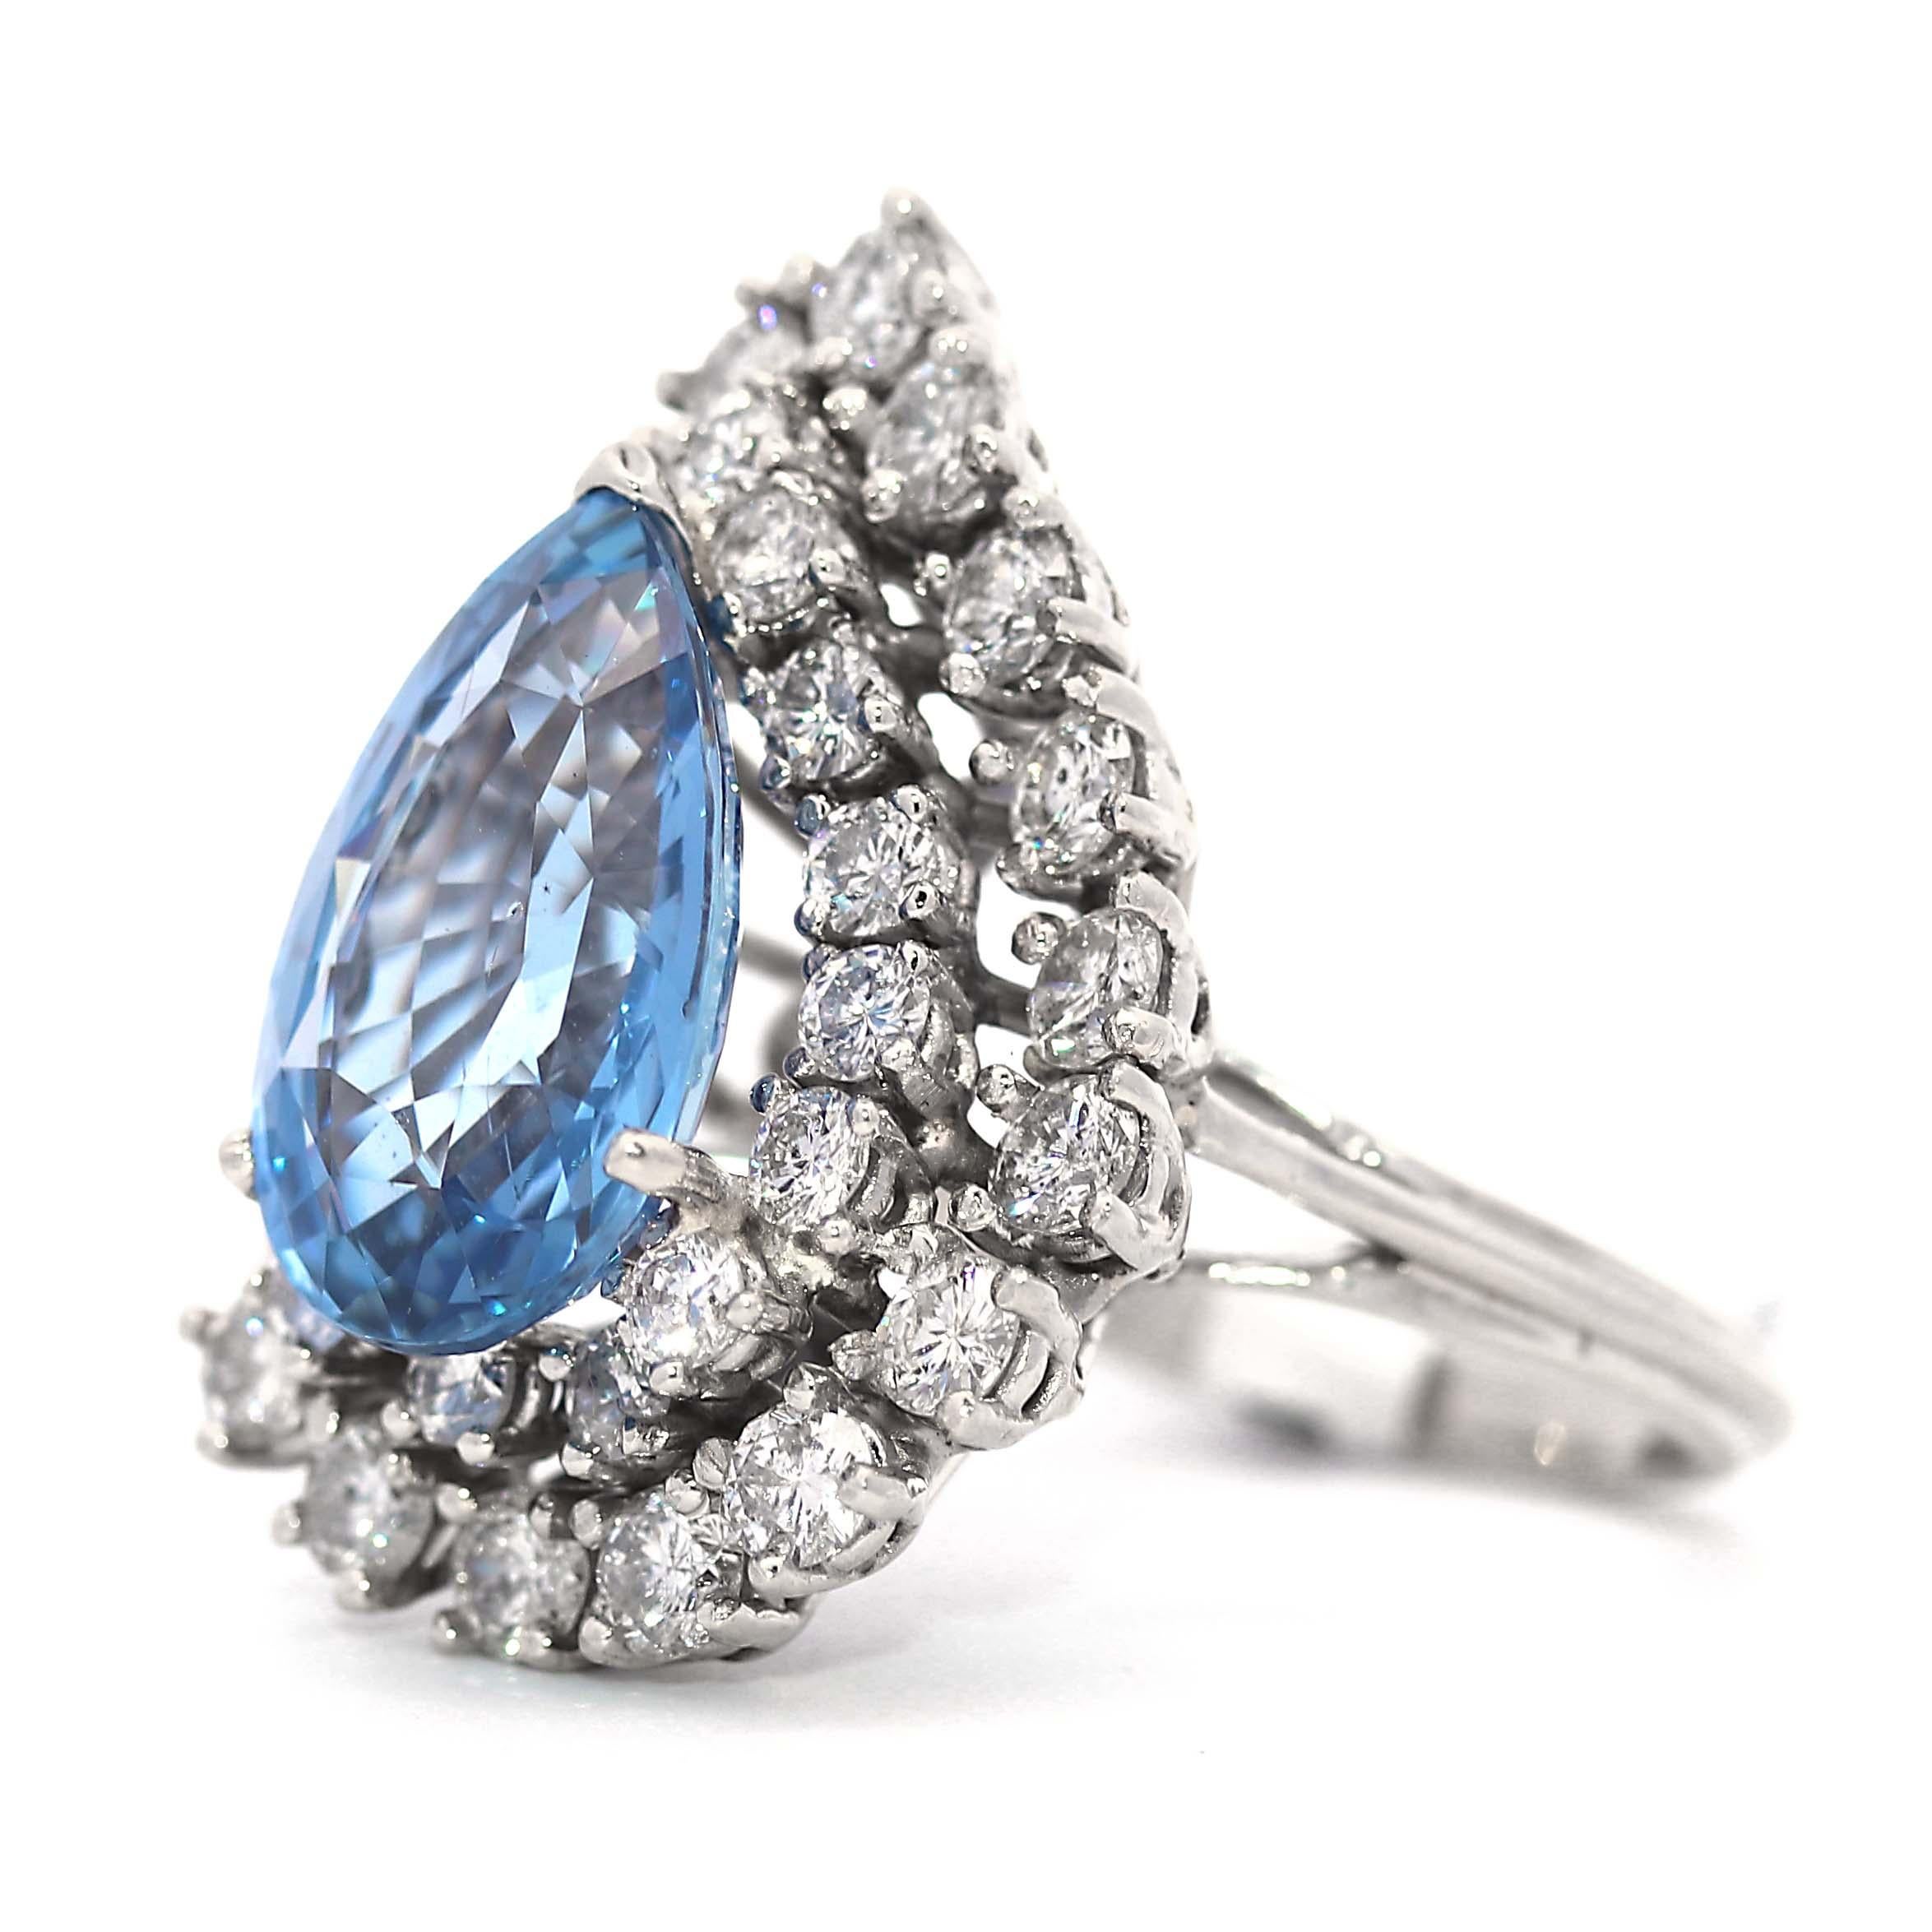 GIA-zertifiziert No Heat Sri Lanka / Ceylon Saphir mit einem Gewicht von 8,38 Karat birnenförmigen Diamant-Ring.  Der zentrale Ceylon-Saphir im Birnenschliff strahlt in einem brillanten, leuchtenden Blauton. Dieser bezaubernde Tafelaufsatz mit dem